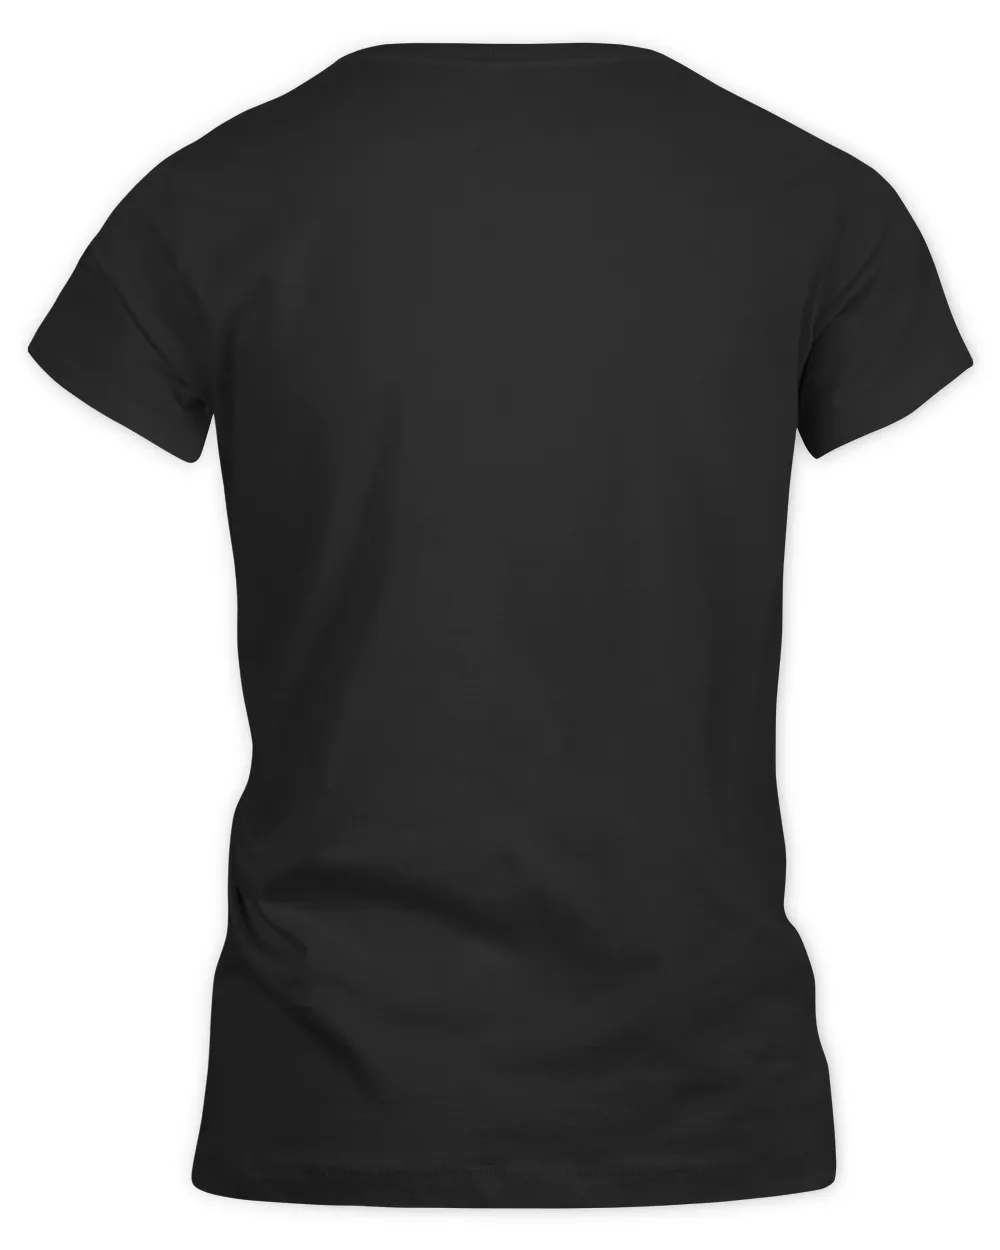 Golf T-Shirt Design Vector